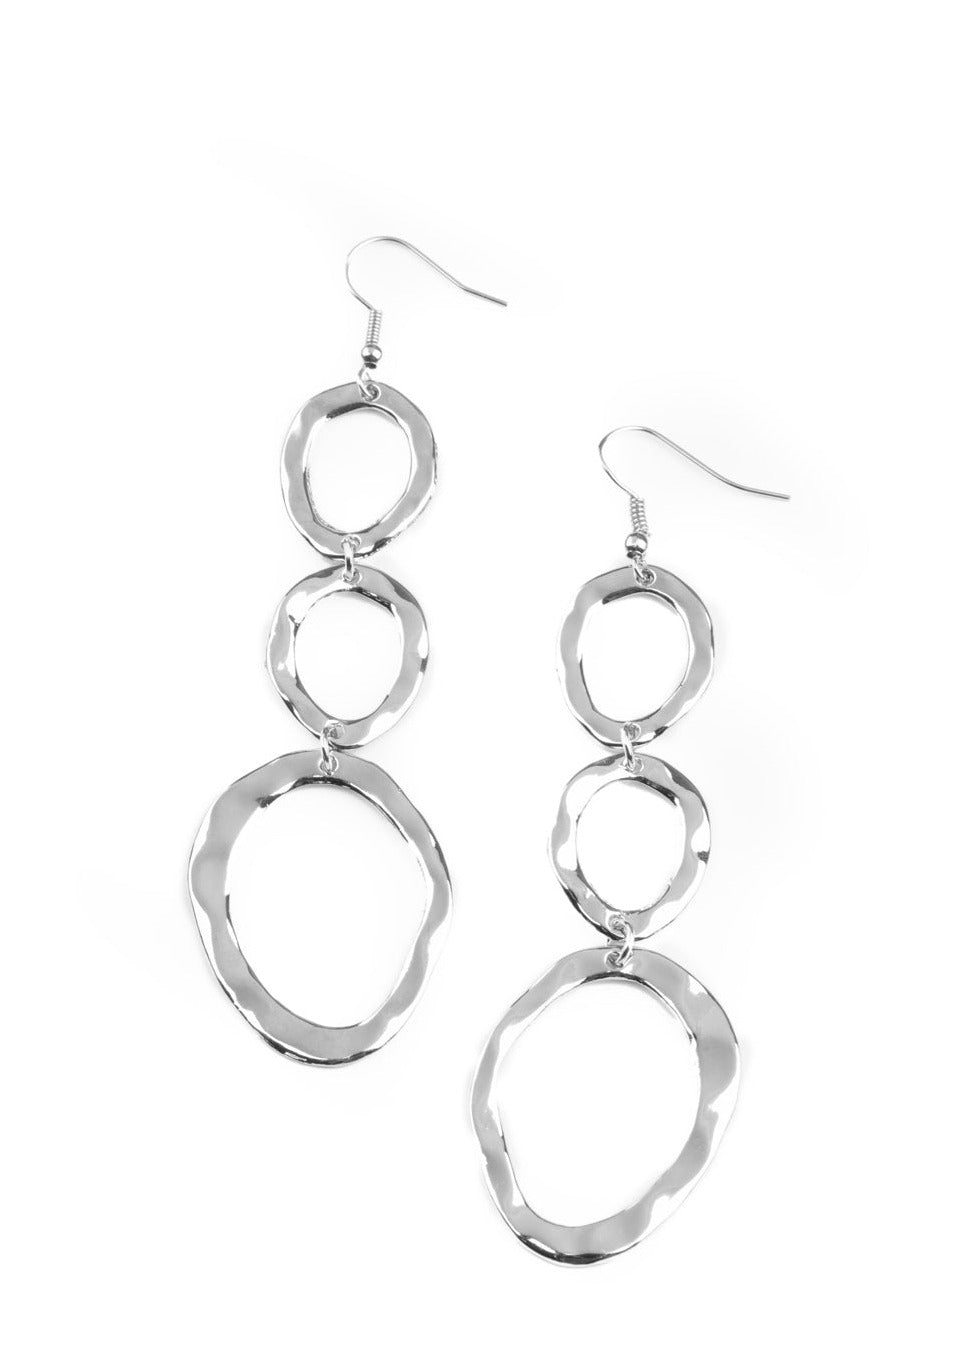 So OVAL It! - Silver Earrings - E0043